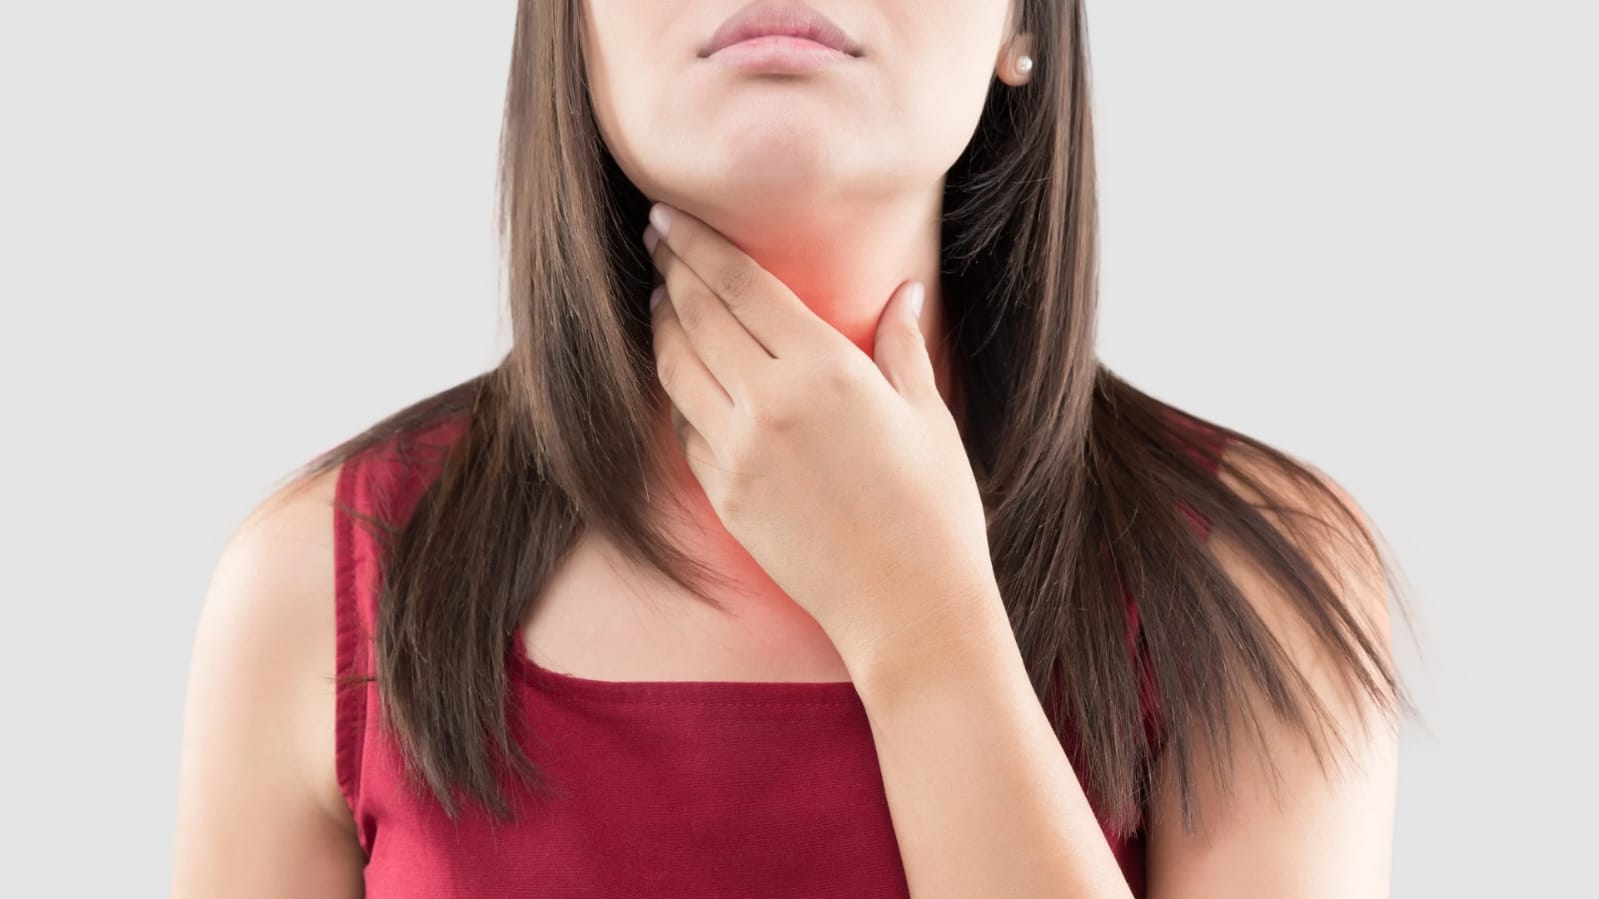 Sexo oral pode causar câncer de garganta? Médicos avaliam correlação; veja